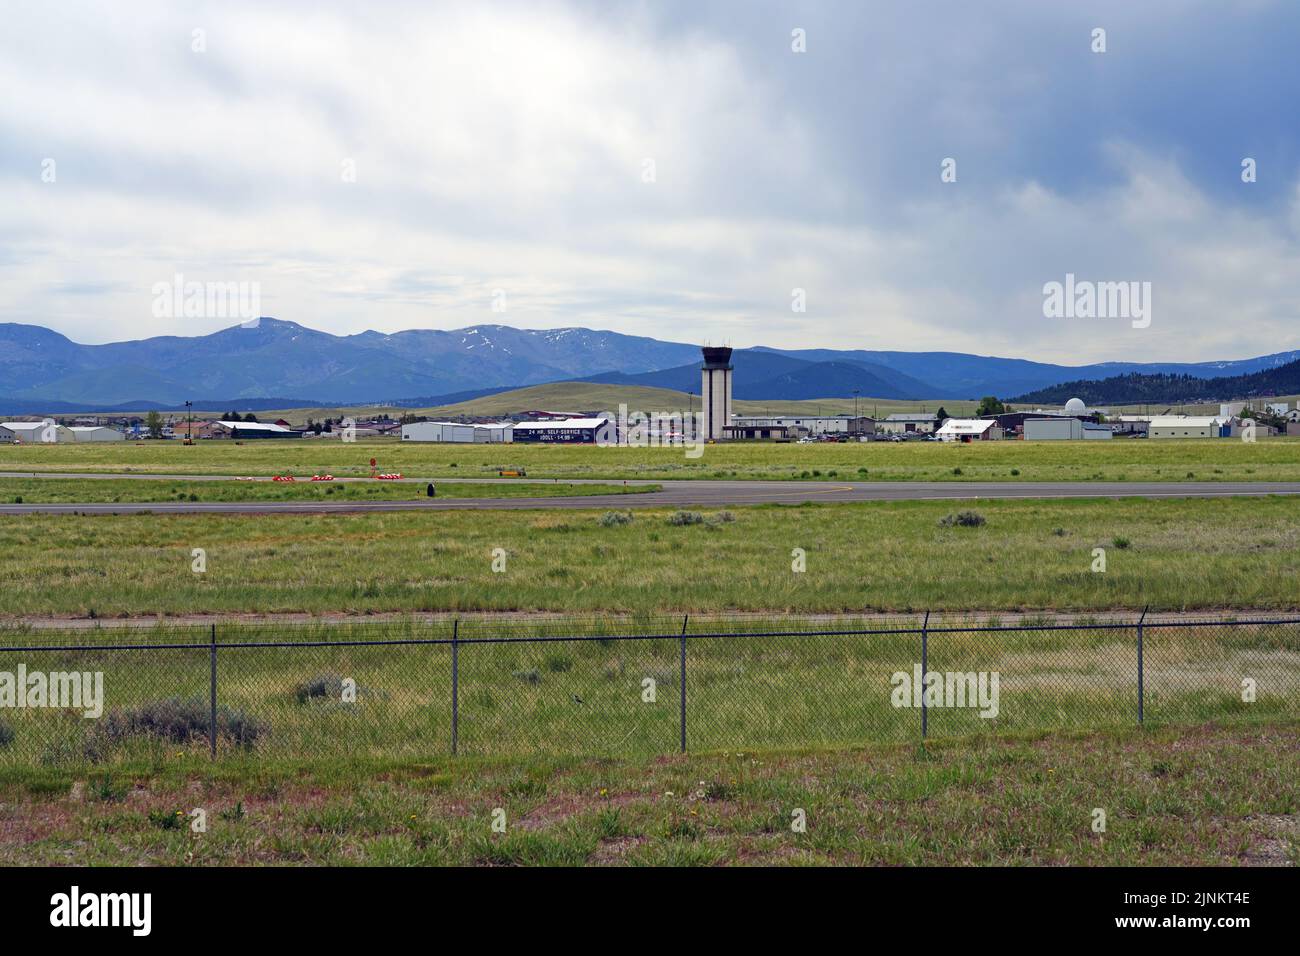 HELENA, MT -10 JUN 2021- Vista del Aeropuerto Regional de Helena (HLN), un aeropuerto regional público en Helena, la capital de Montana, Estados Unidos. Foto de stock